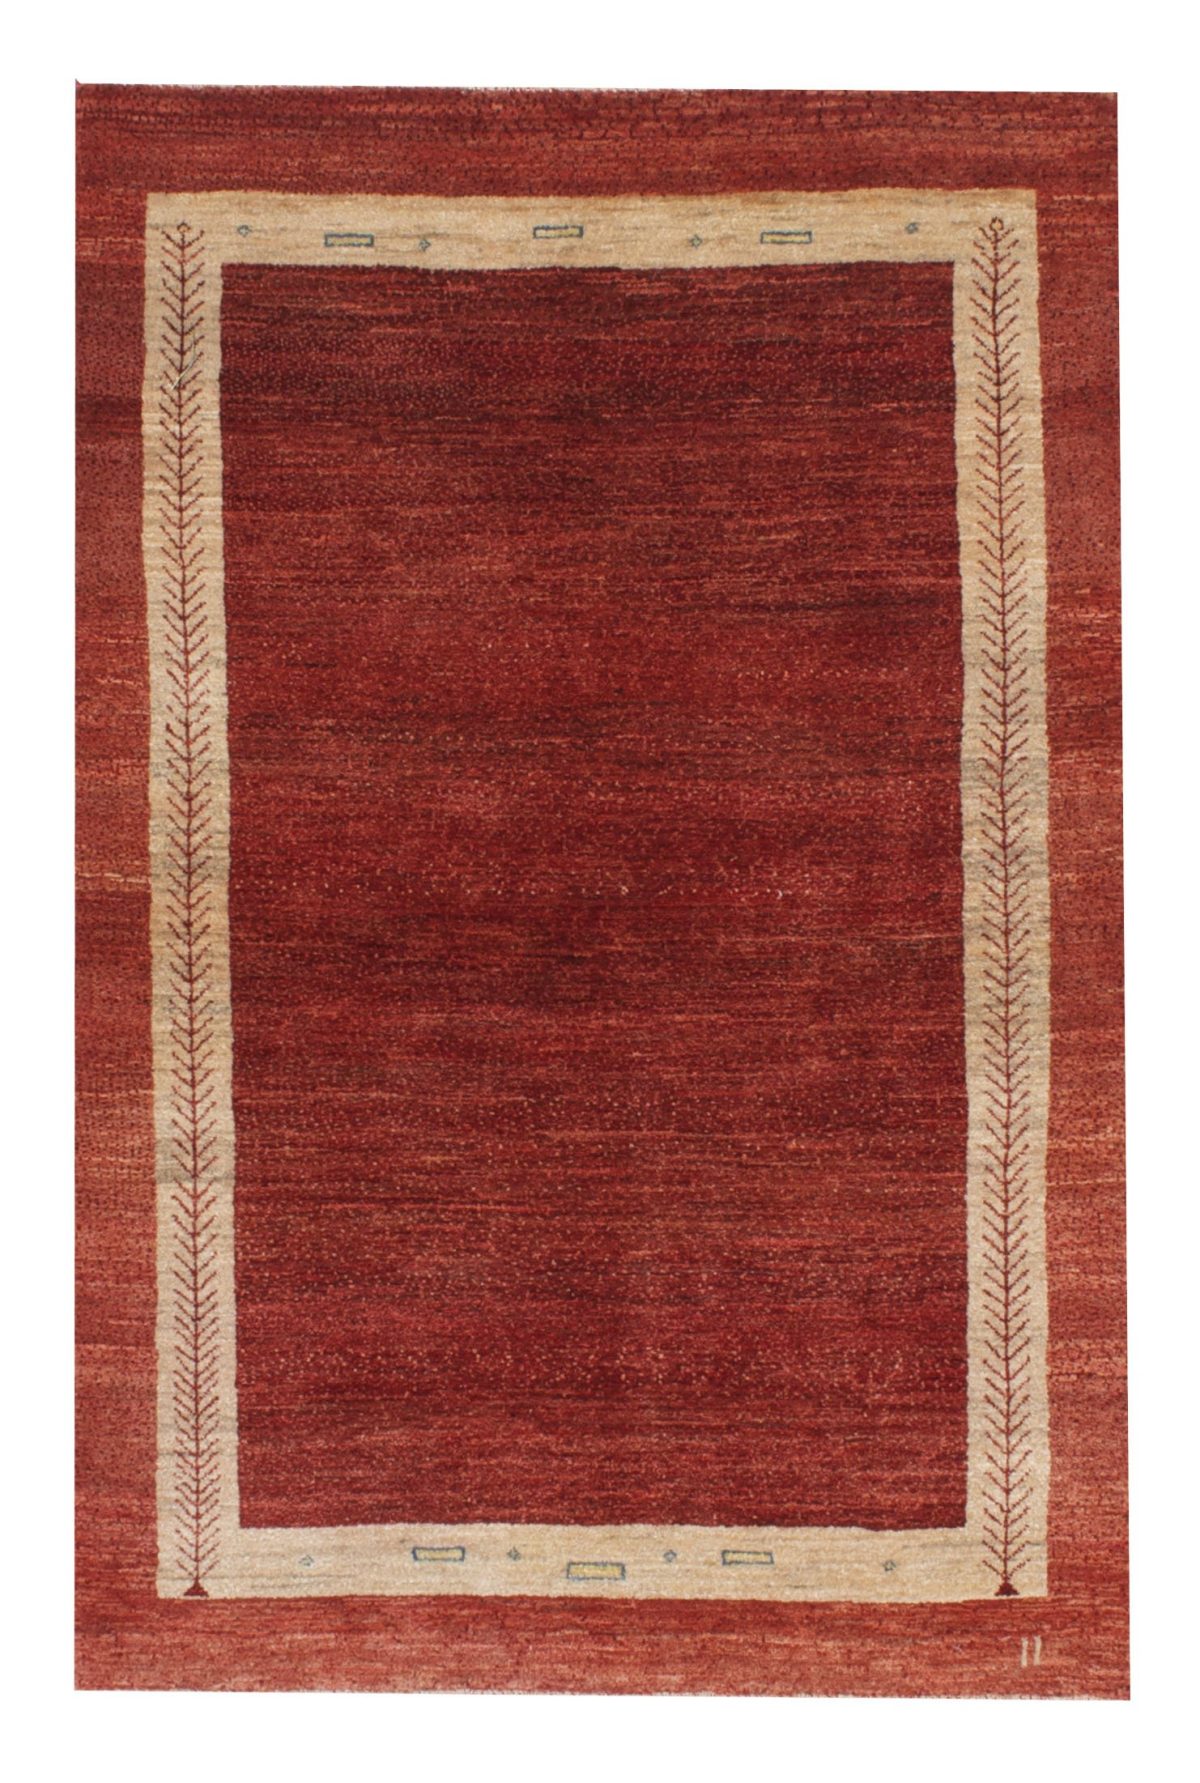 Persian Gabbeh 3' 4" x 4' 11" Red Wool Handmade Area Rug - Shabahang Royal Carpet